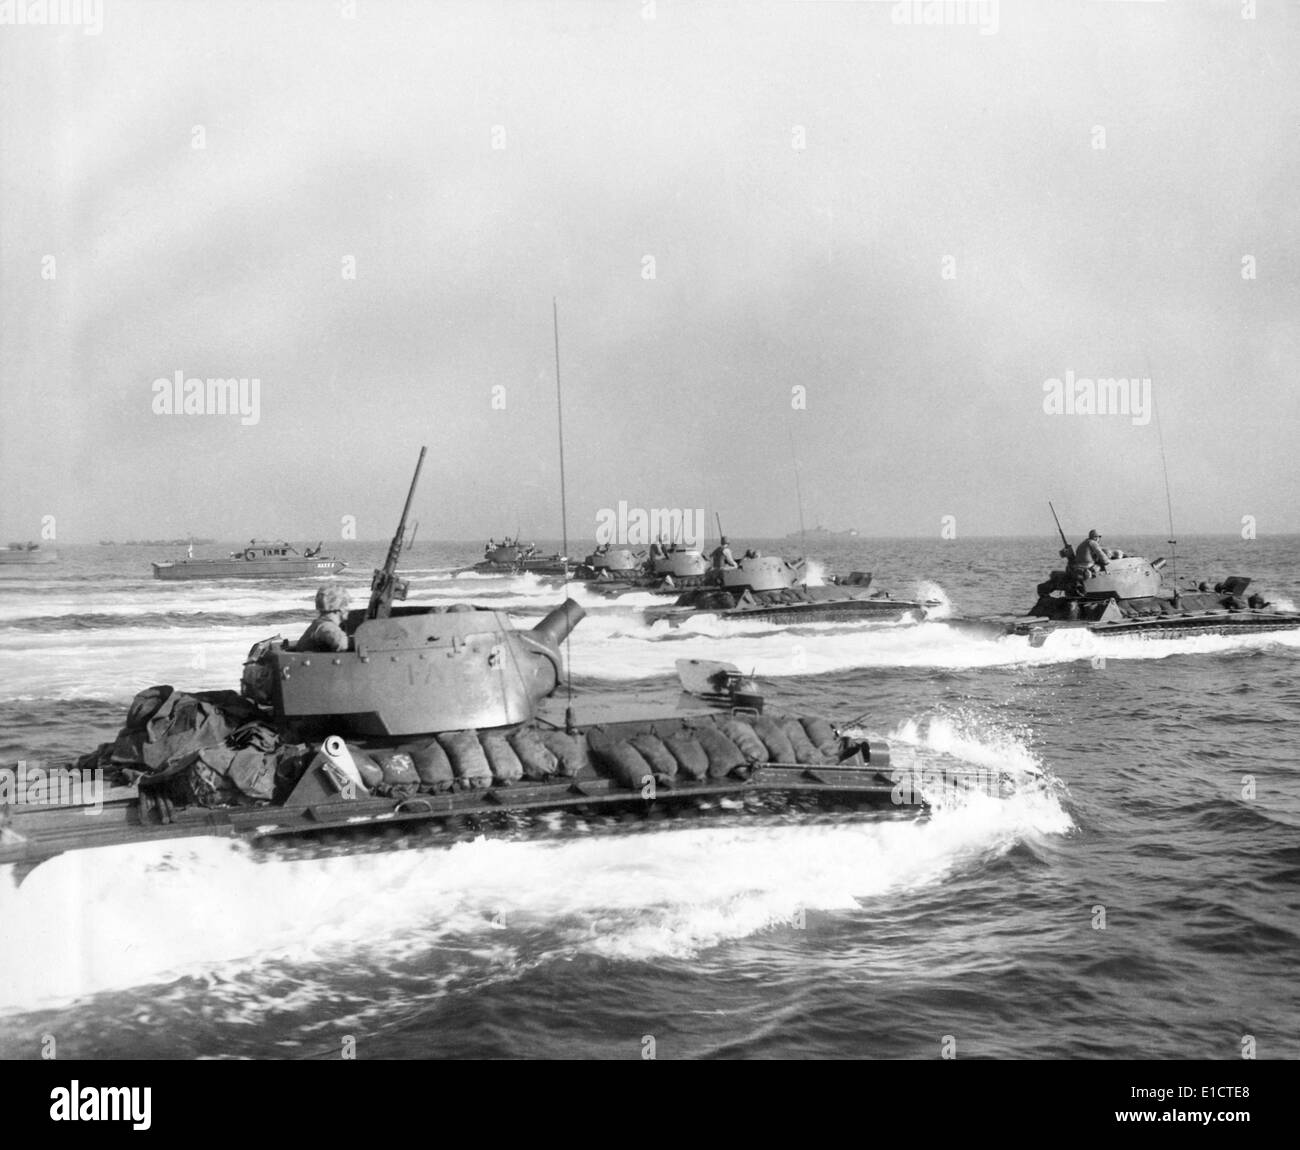 Tracteurs amphibie blindé dans les premières vagues d'invasion maritime d'Okinawa. 1 avril, 1945. La Seconde Guerre mondiale 2. (BSLOC___2013 13 79) Banque D'Images